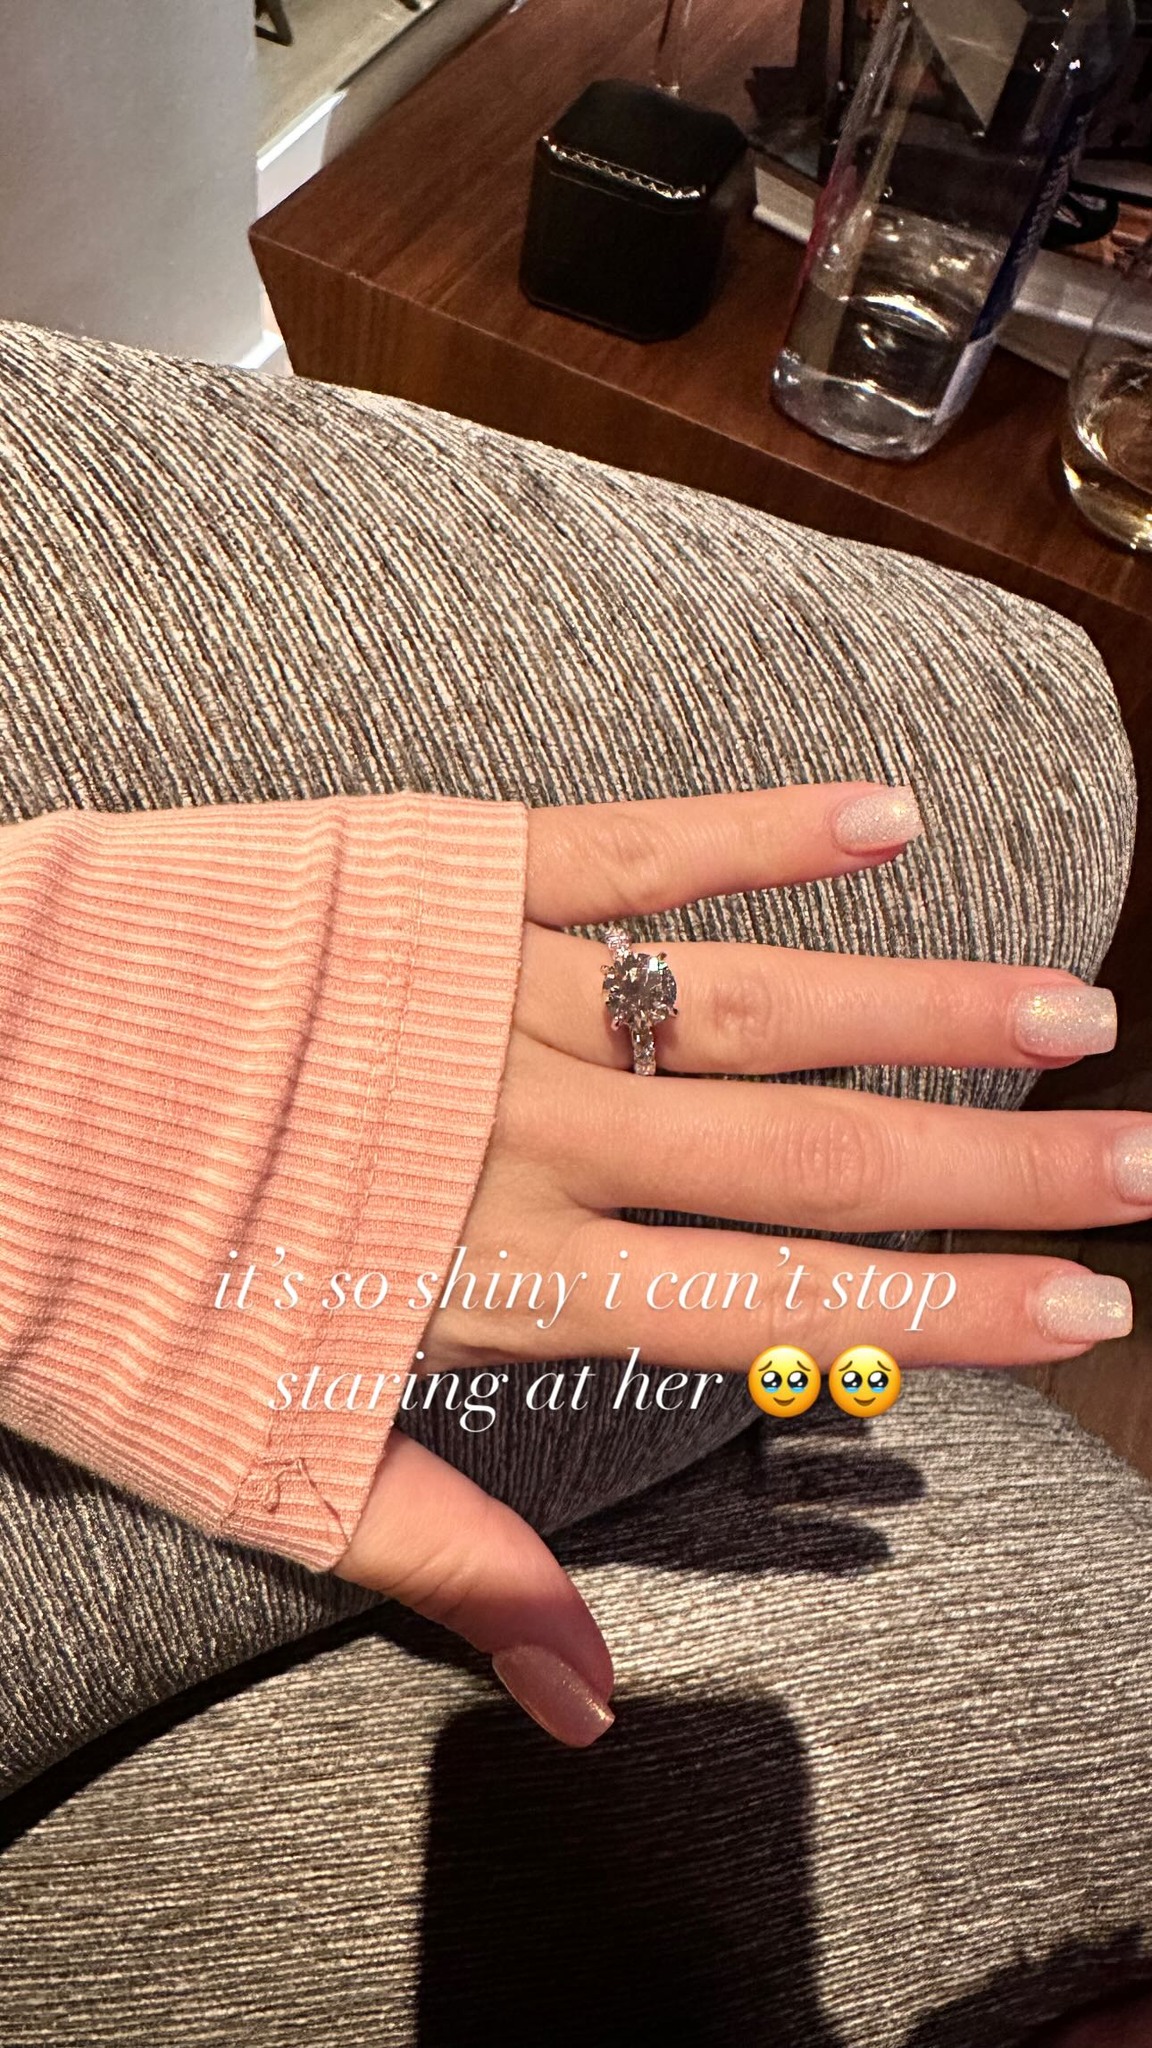 Brielle Biermann's engagement ring